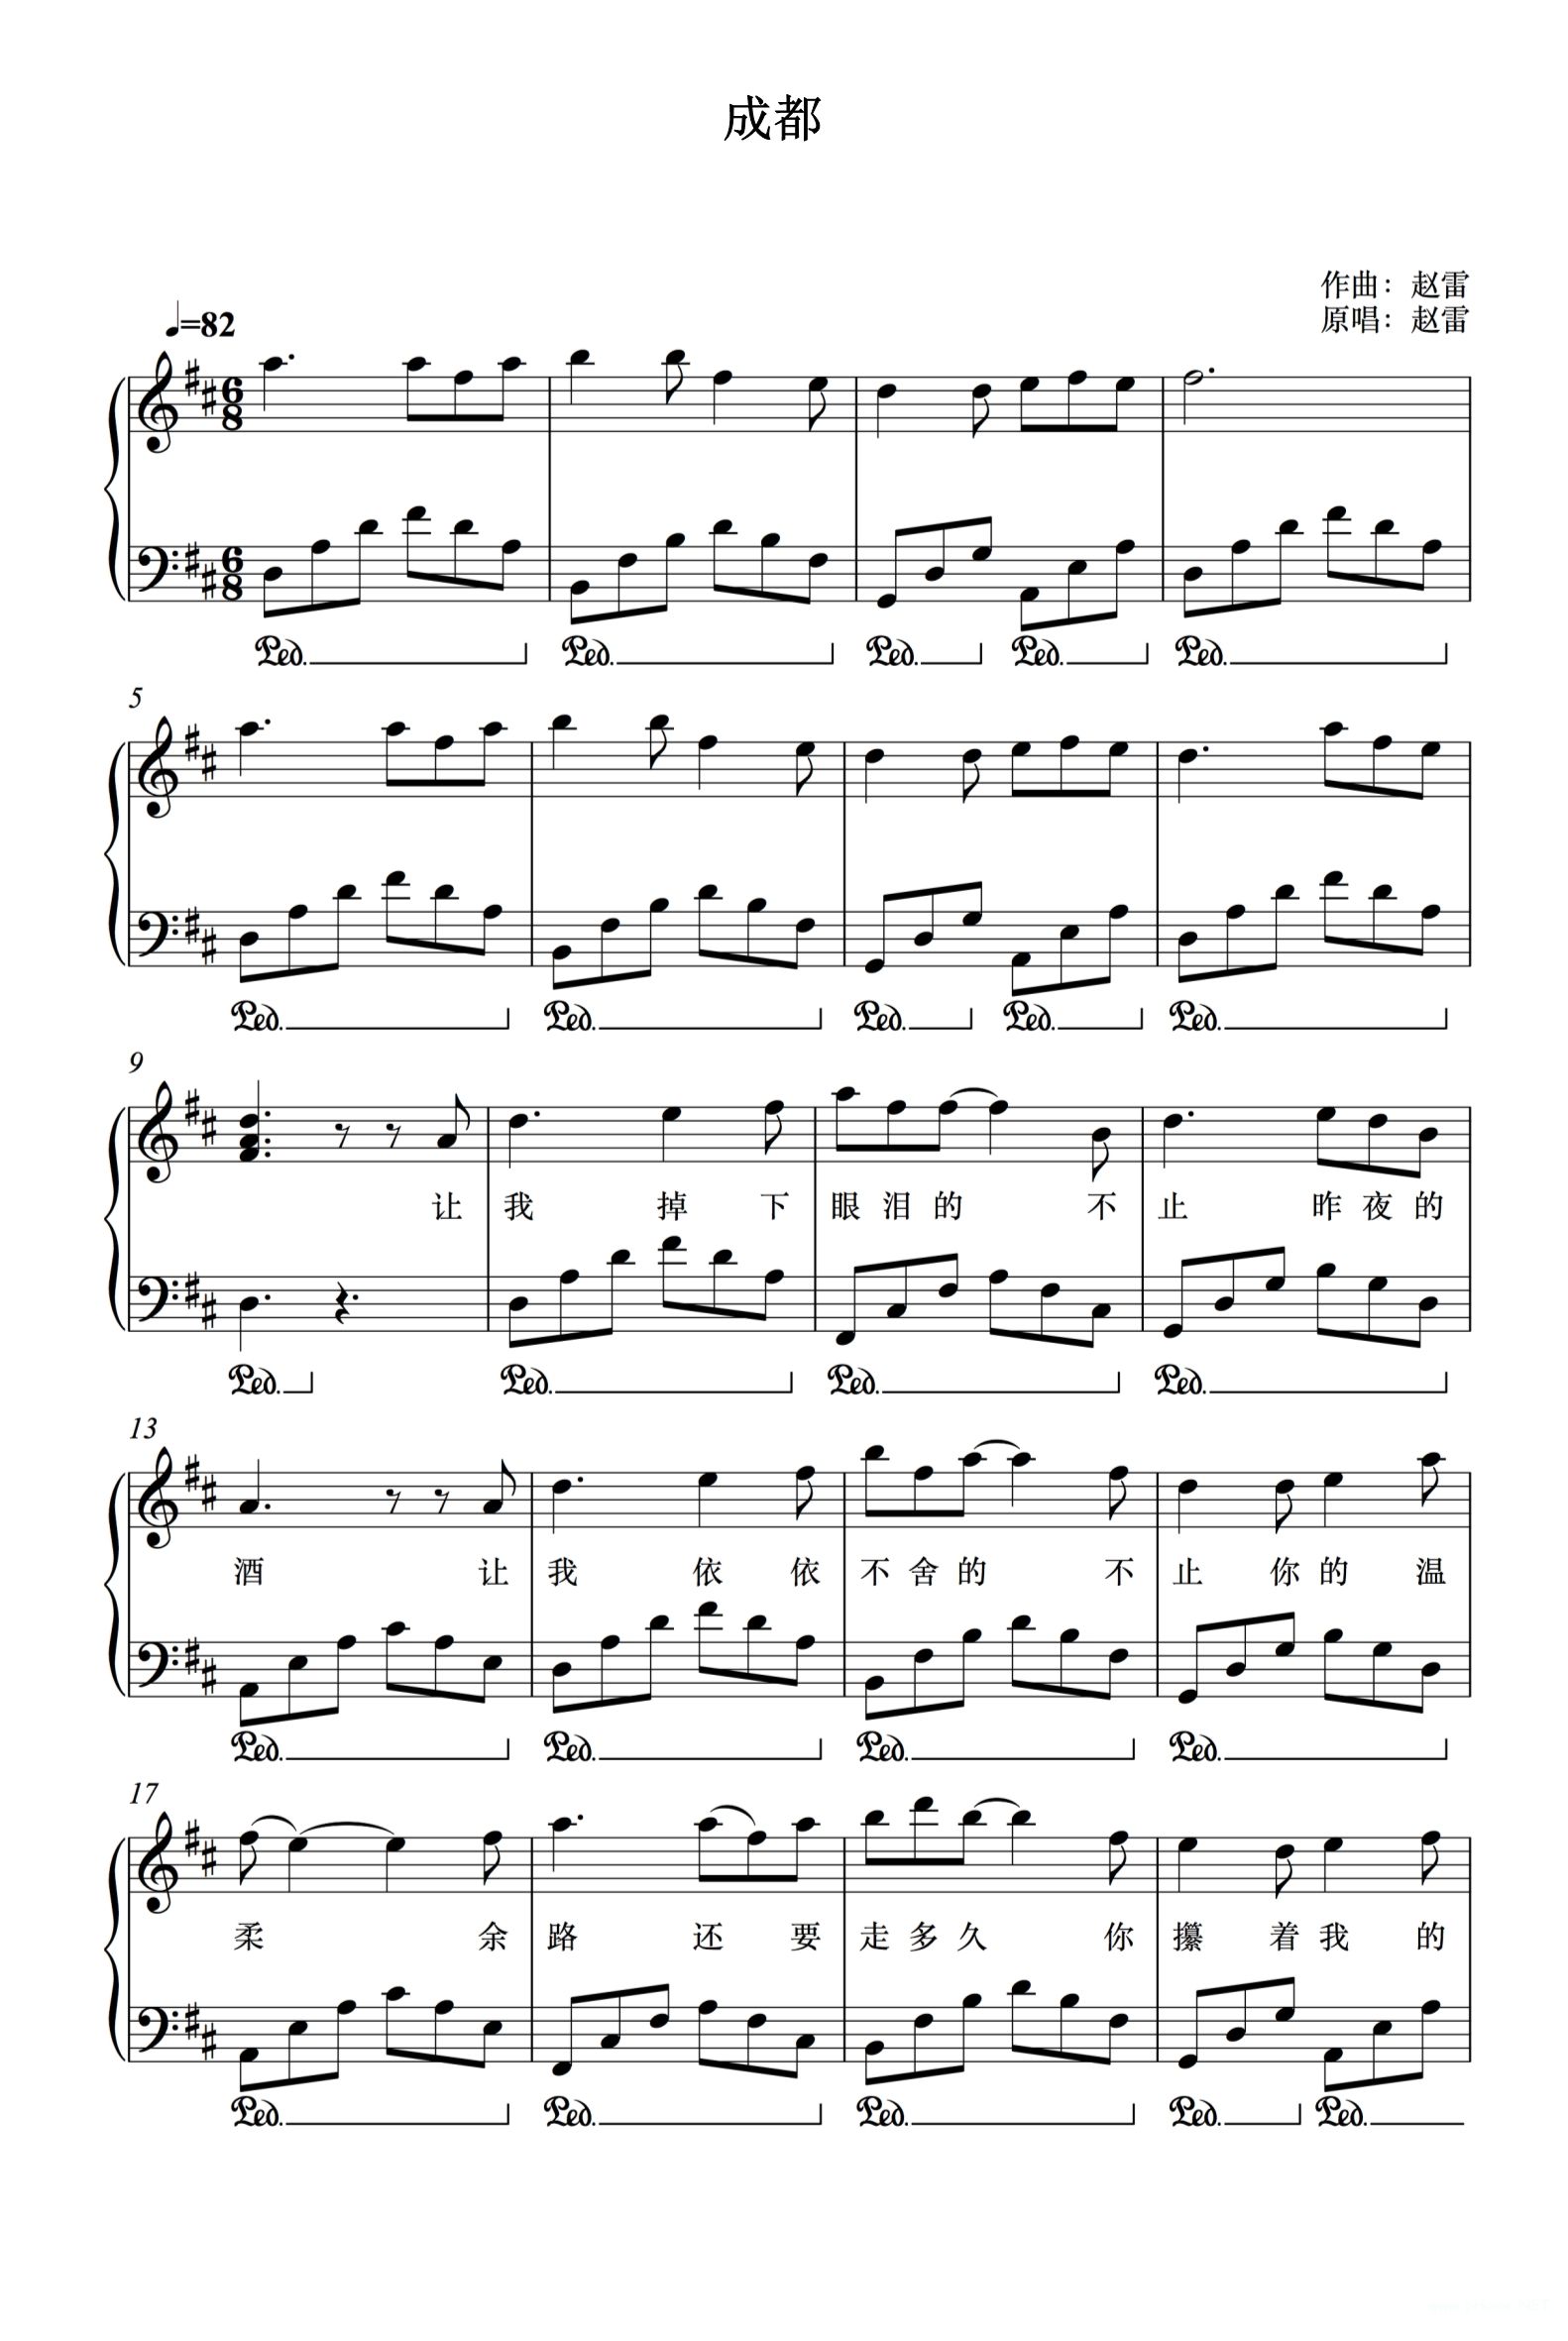 《成都》钢琴谱-赵雷1